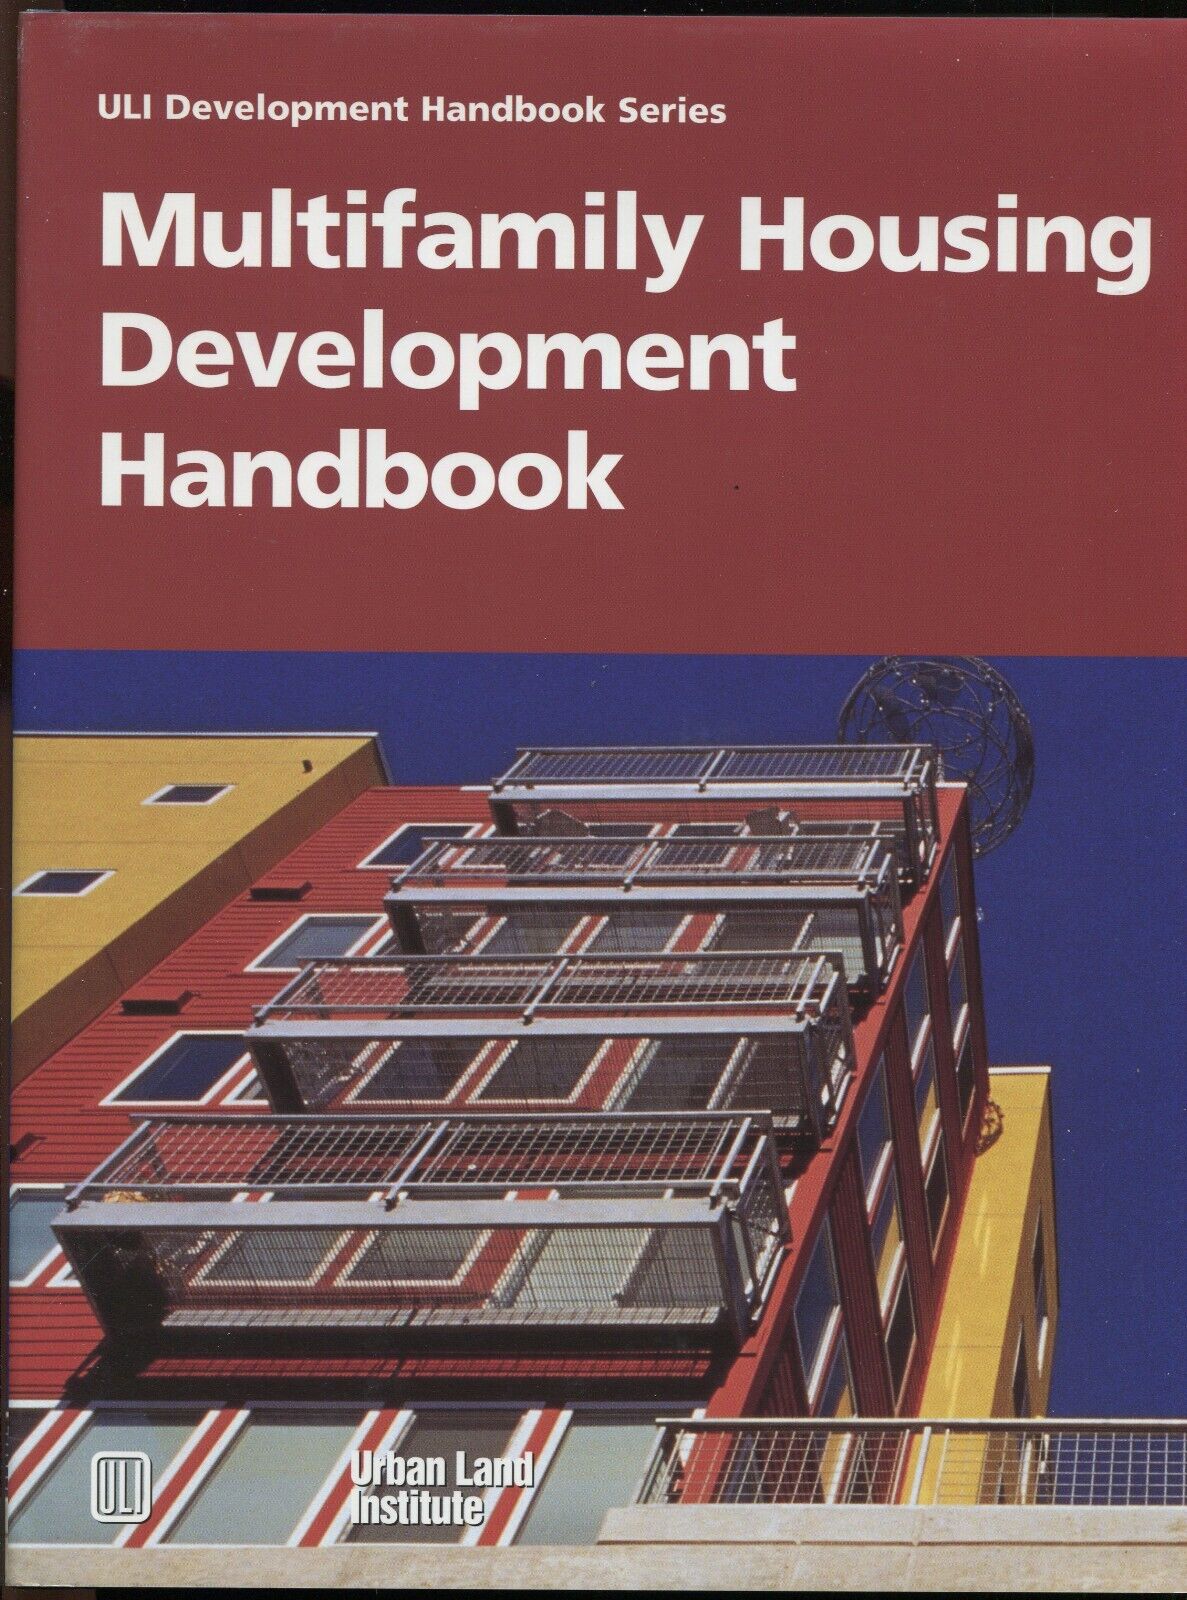 Multifamily Housing Development Handbook by Adrienne Schmitz ULI Handbook Series